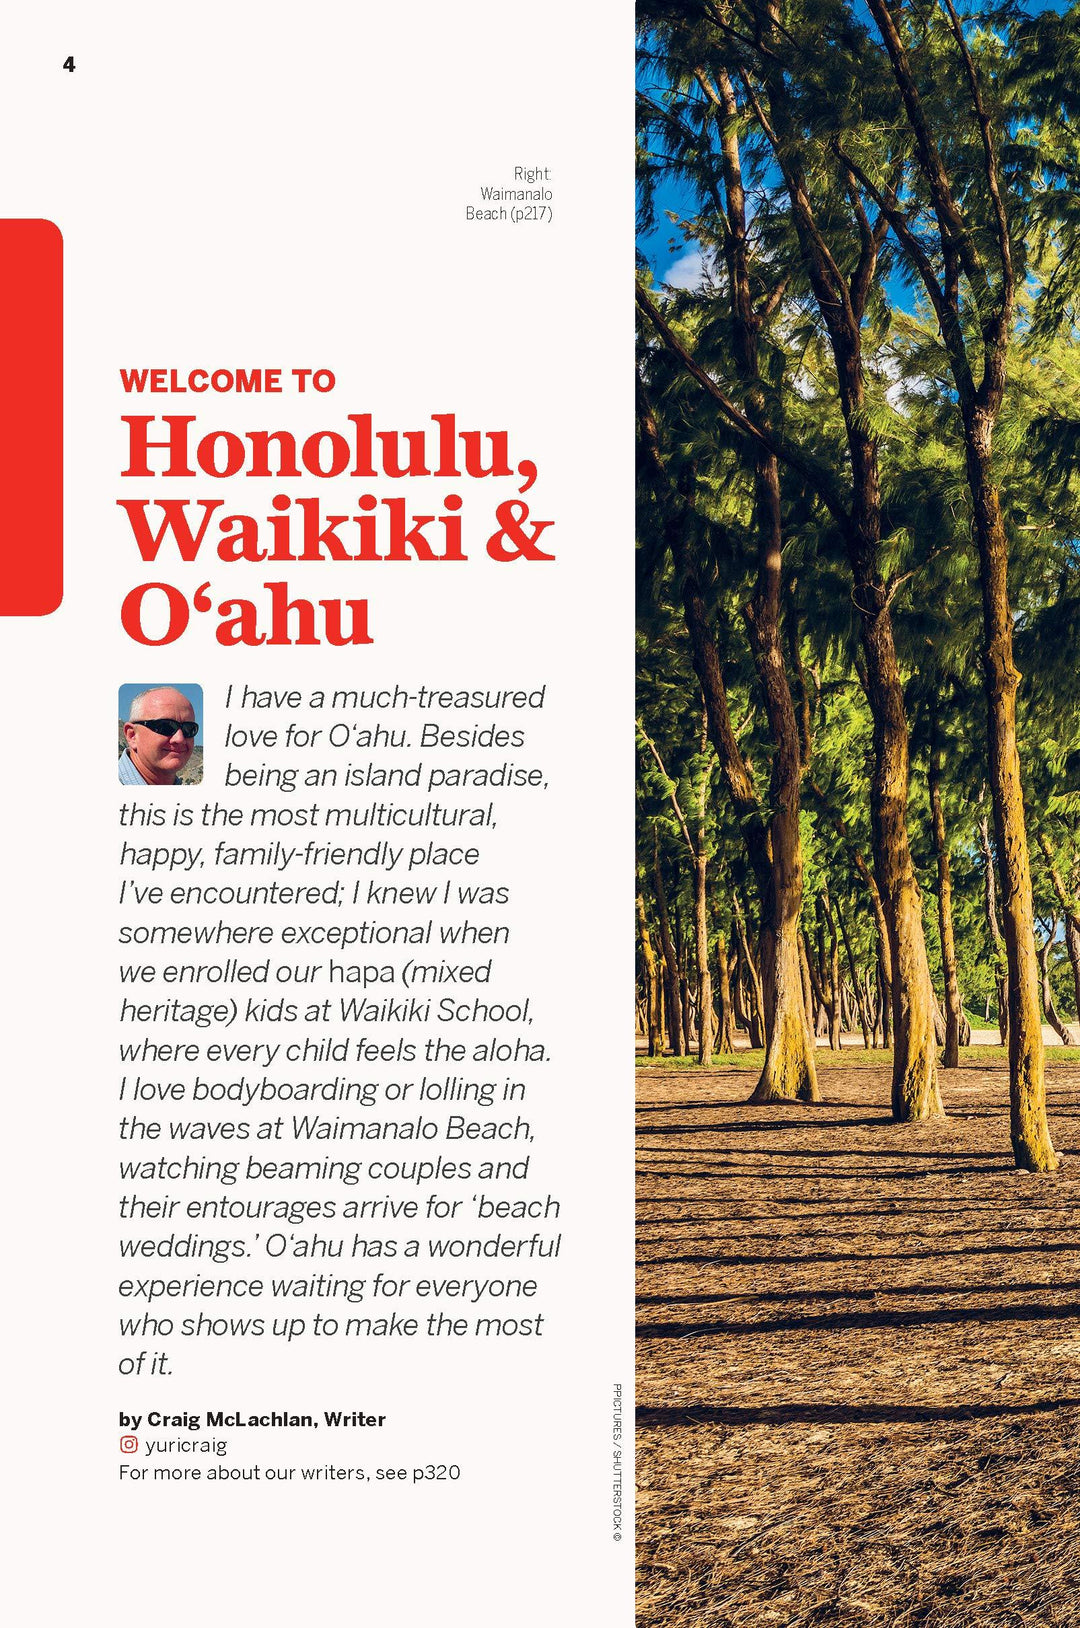 Guide de voyage (en anglais) - Honolulu, Waikiki & Oahu - Édition 2021 | Lonely Planet guide de voyage Lonely Planet 